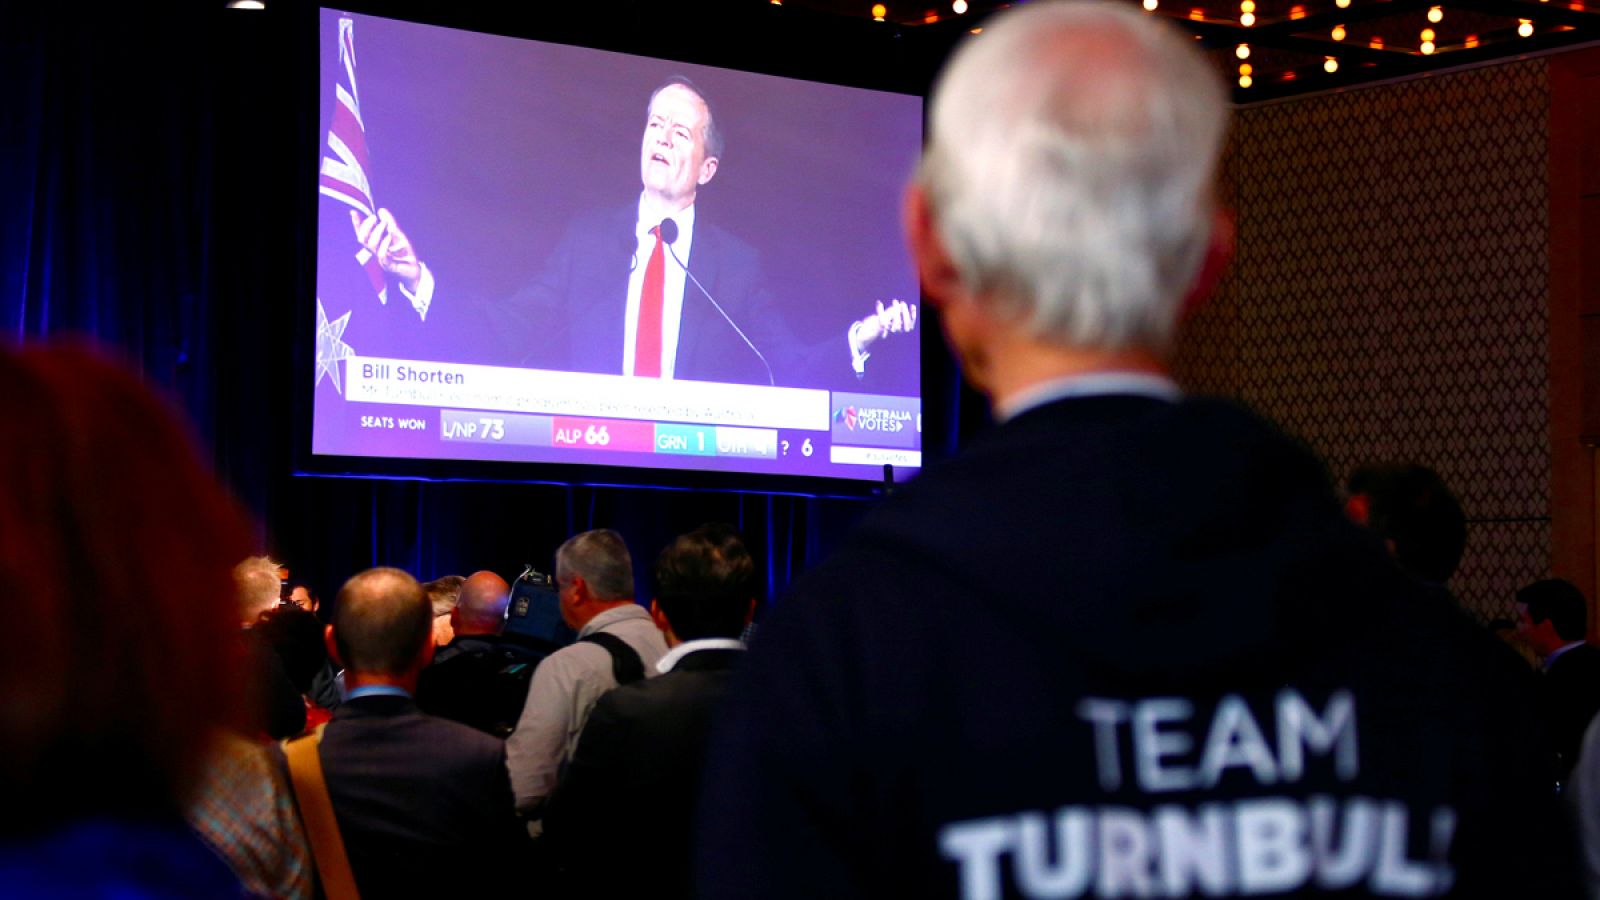 Un votante del los conservadores del primer ministro Malcom Tumbull sigue la rueda de prensa del líder laborista Bill Shorten.